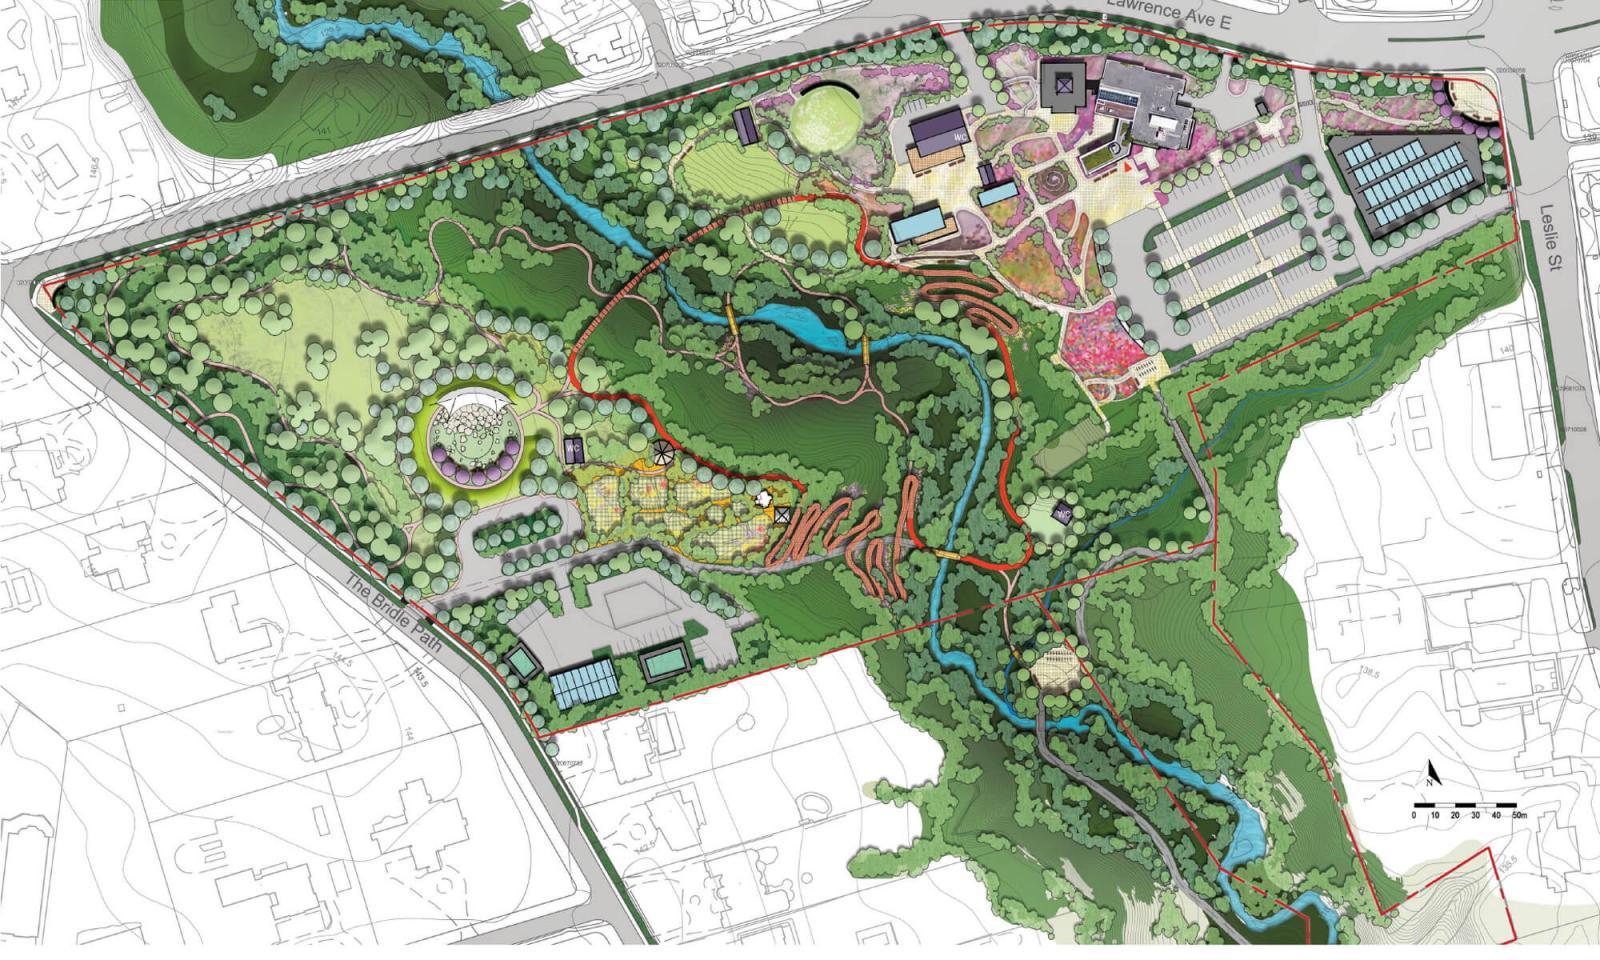 Toronto Botanical Garden plans expansion